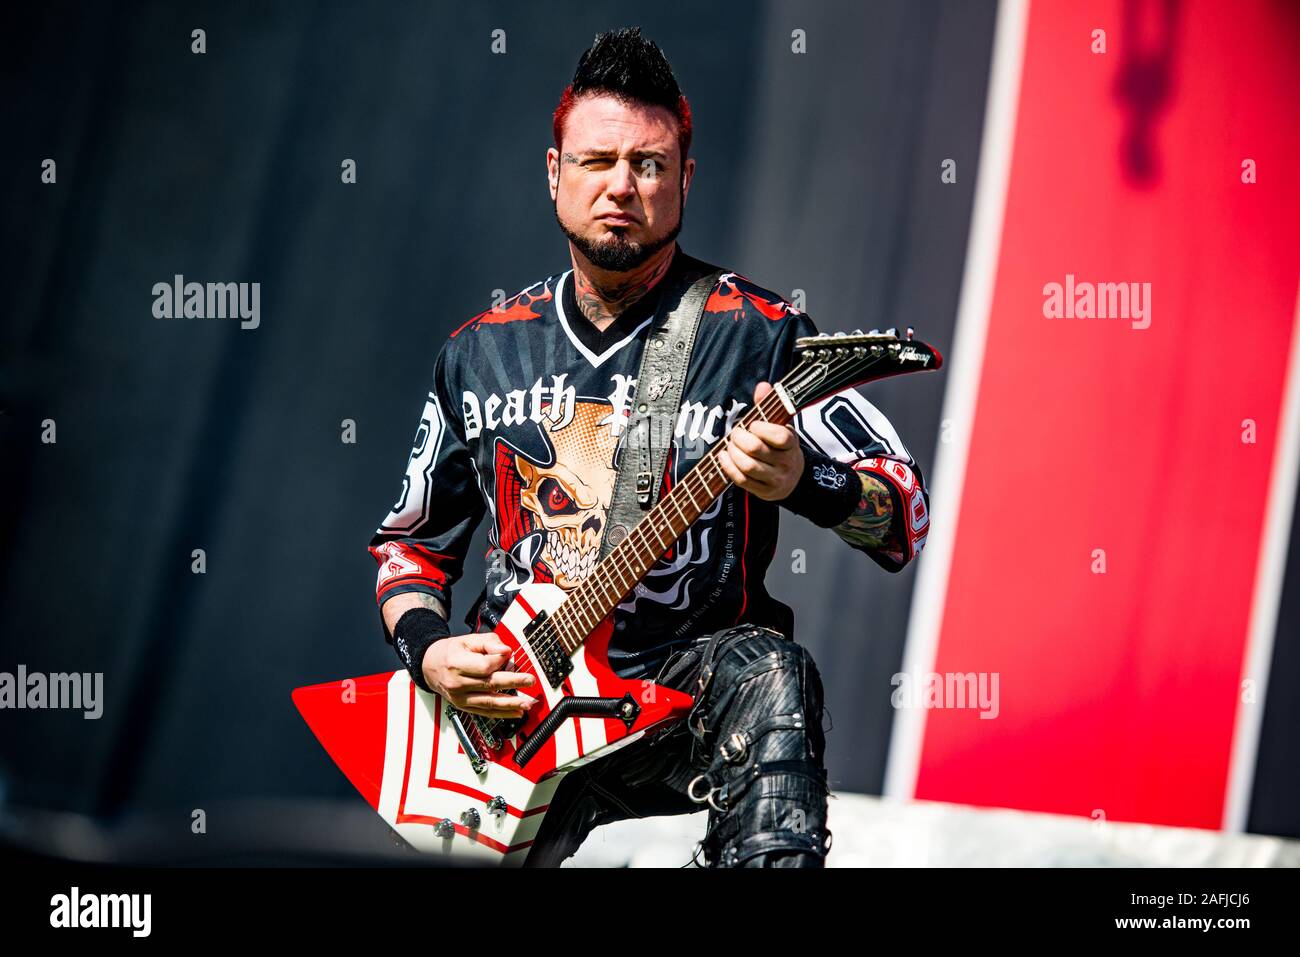 MUNICH, Alemania - 31 de mayo: Jason Hook, guitarrista de la banda de metal  americano od Five Finger muerte Punch (5FDP) tocando en vivo en el festival  Rockavaria el 31 de mayo